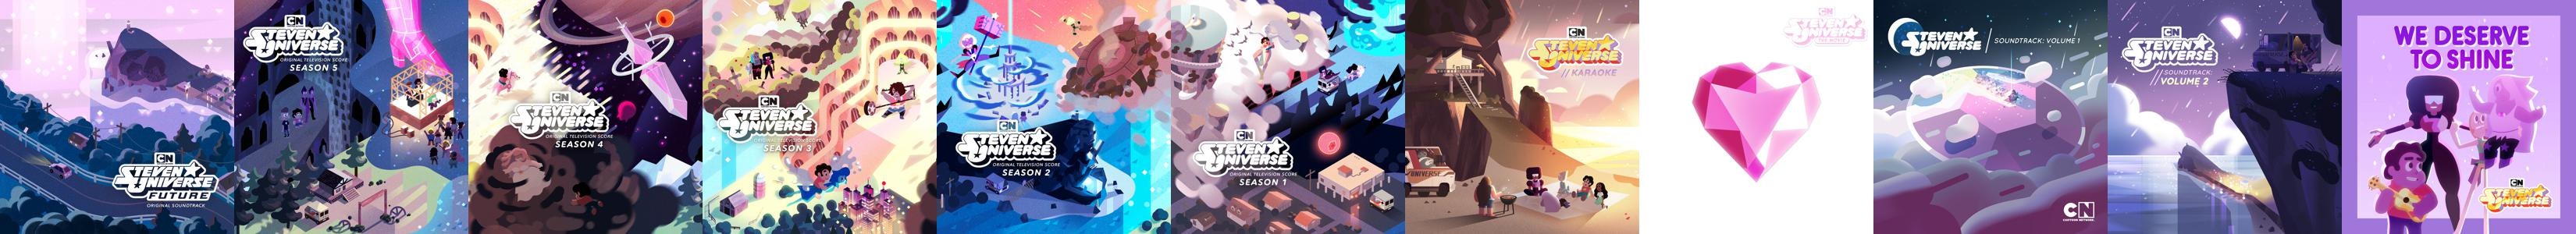 Steven Universe: Season 1 (Score from the Original Soundtrack) - Album by Steven  Universe